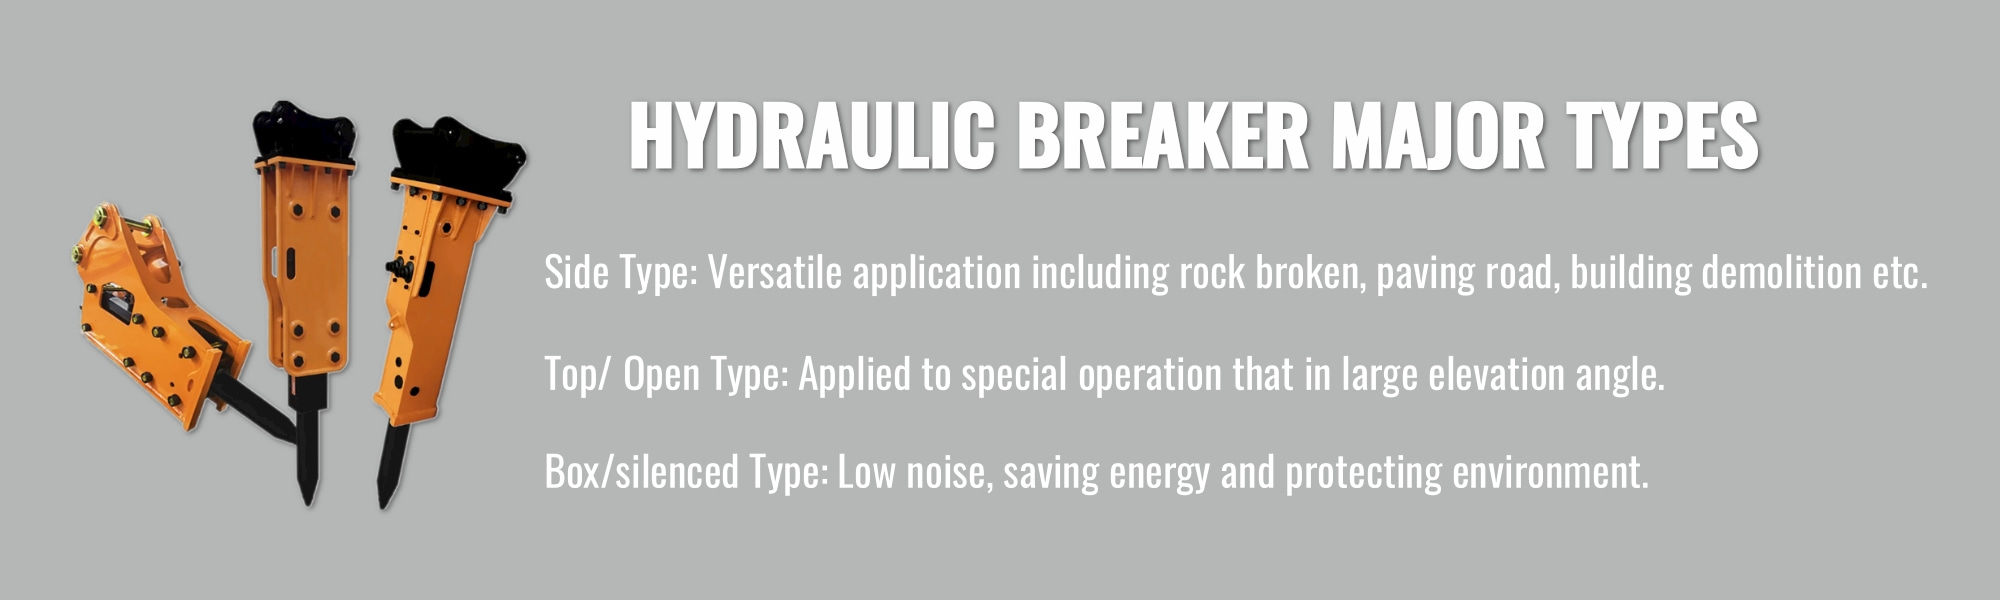 Hydraulic breaker